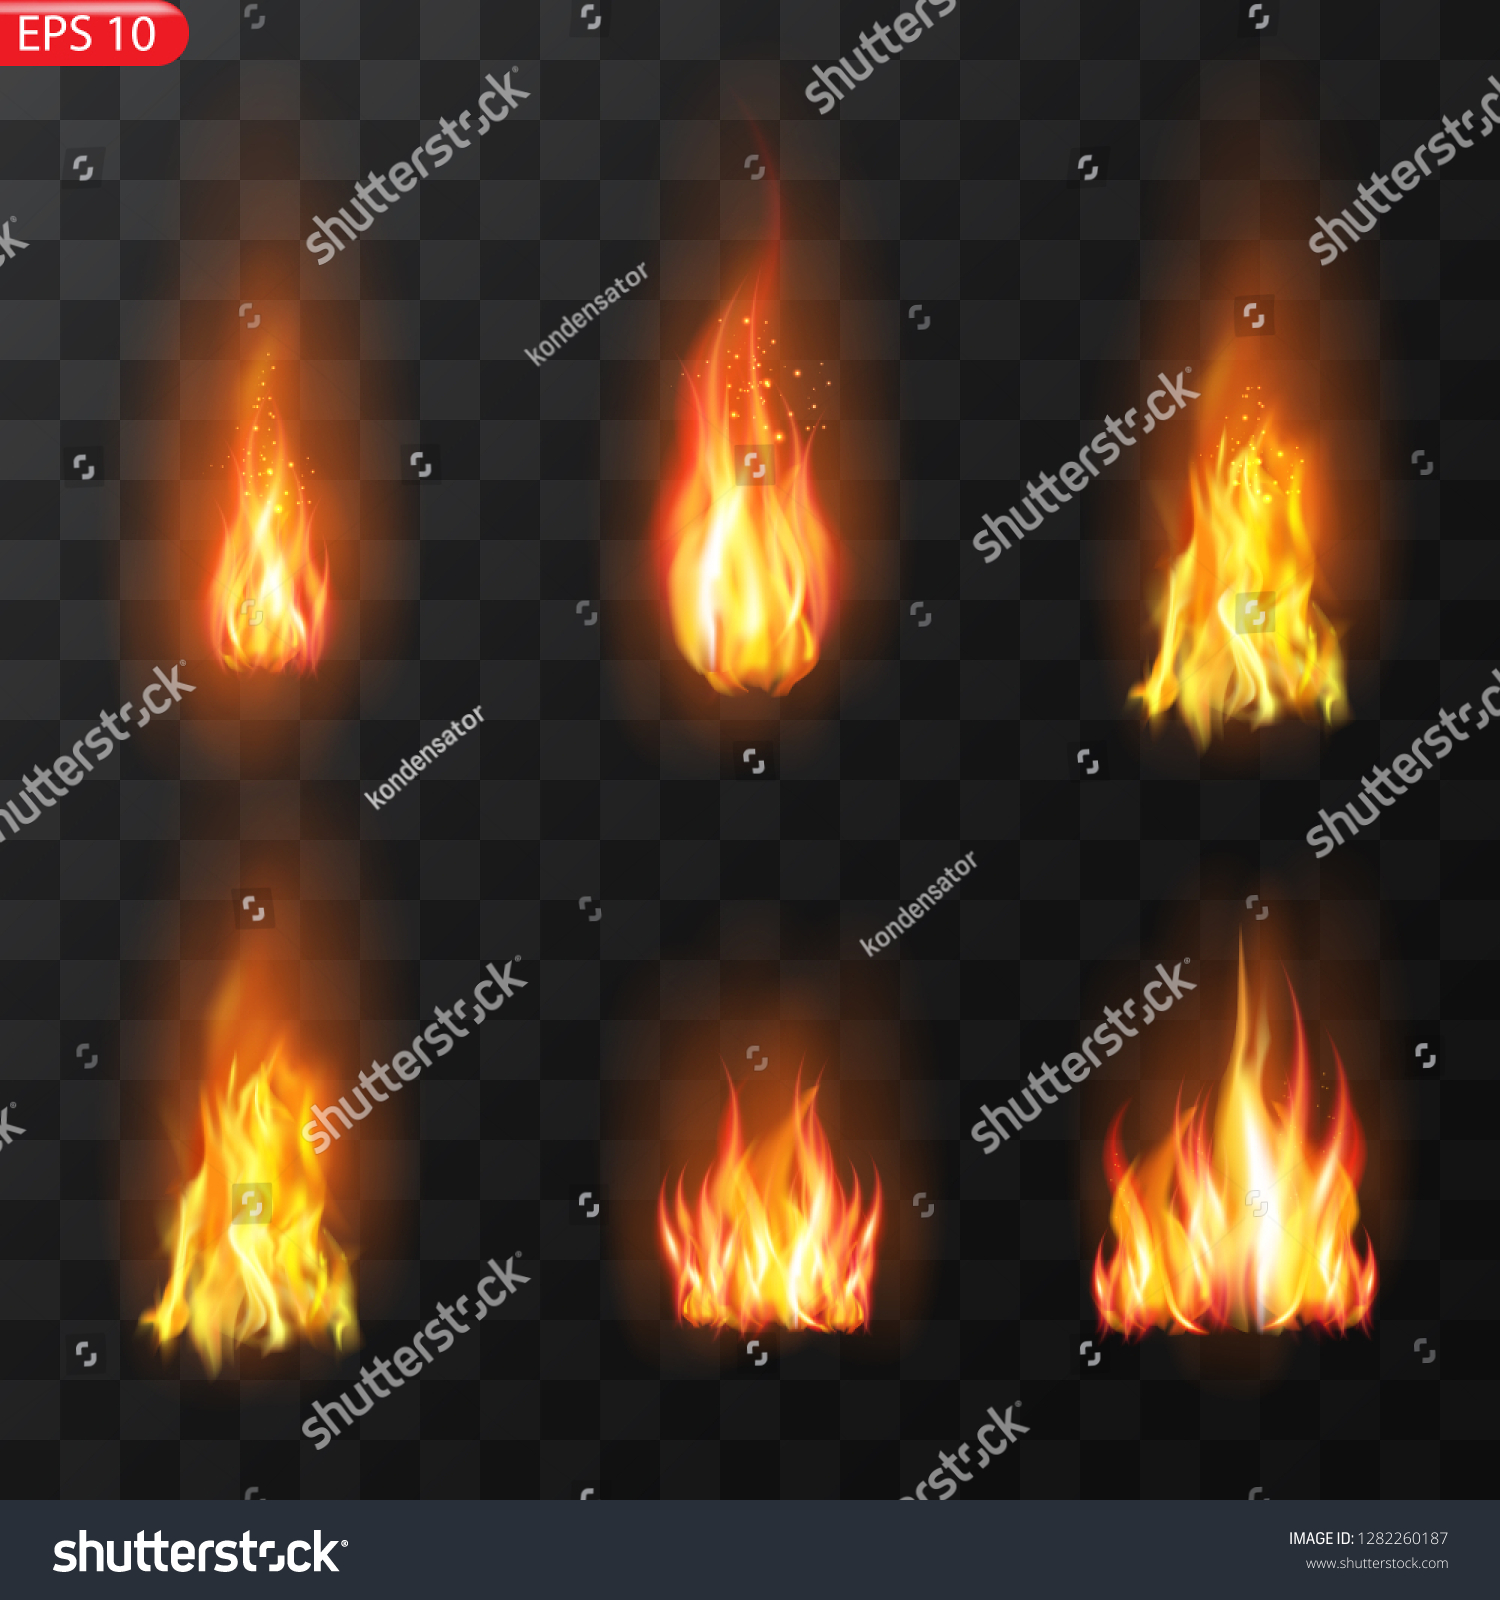 デザインの透明性を持つリアルな炎の炎のベクター画像エフェクト 火の軌跡 炎 を燃やすと 半透明のエレメントが特殊効果を発揮します のベクター画像素材 ロイヤリティフリー